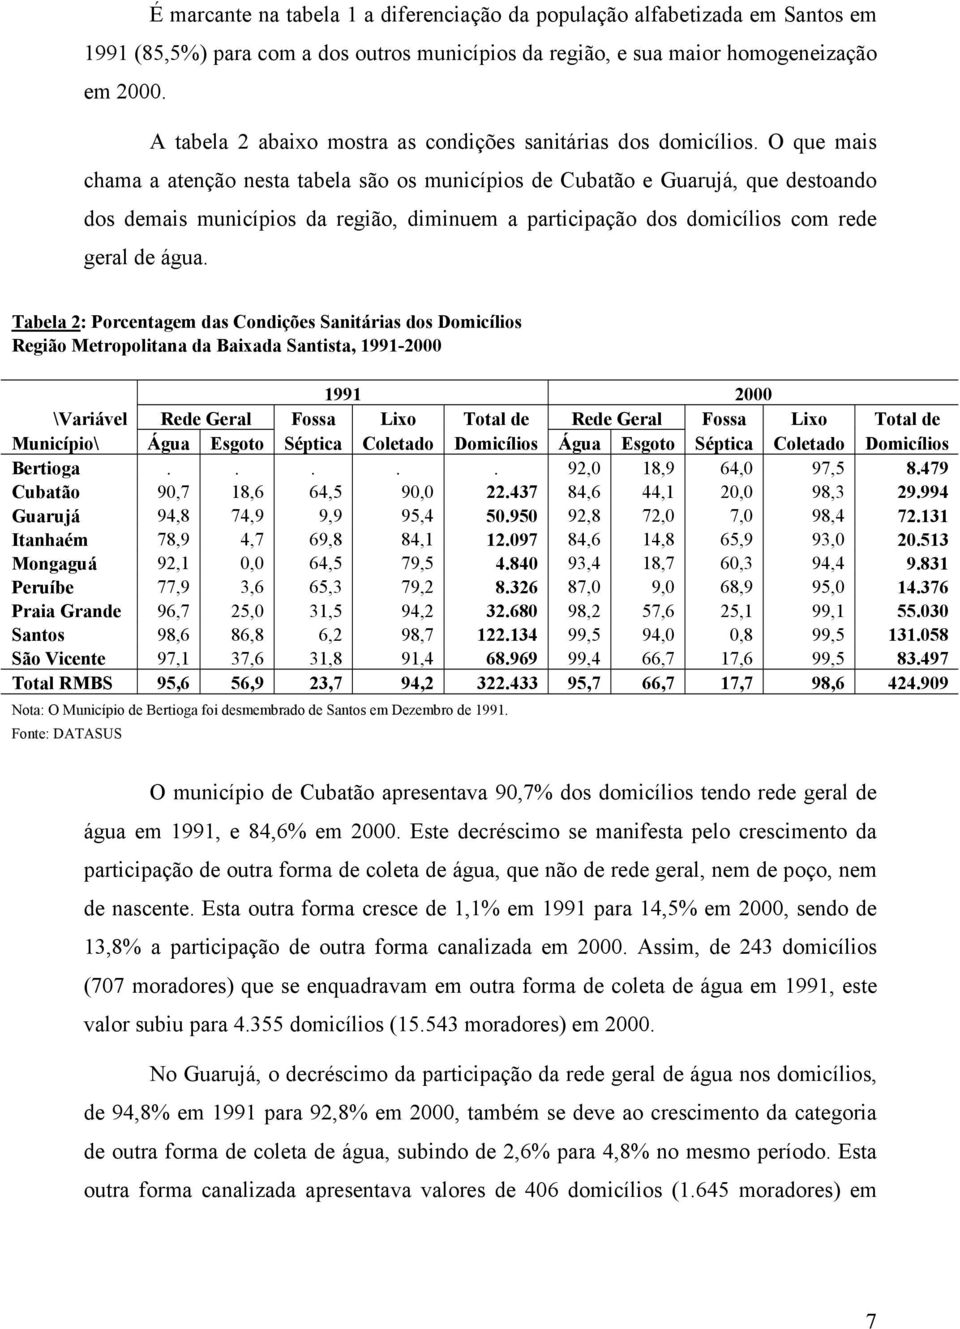 O que mais chama a atenção nesta tabela são os municípios de Cubatão e Guarujá, que destoando dos demais municípios da região, diminuem a participação dos domicílios com rede geral de água.